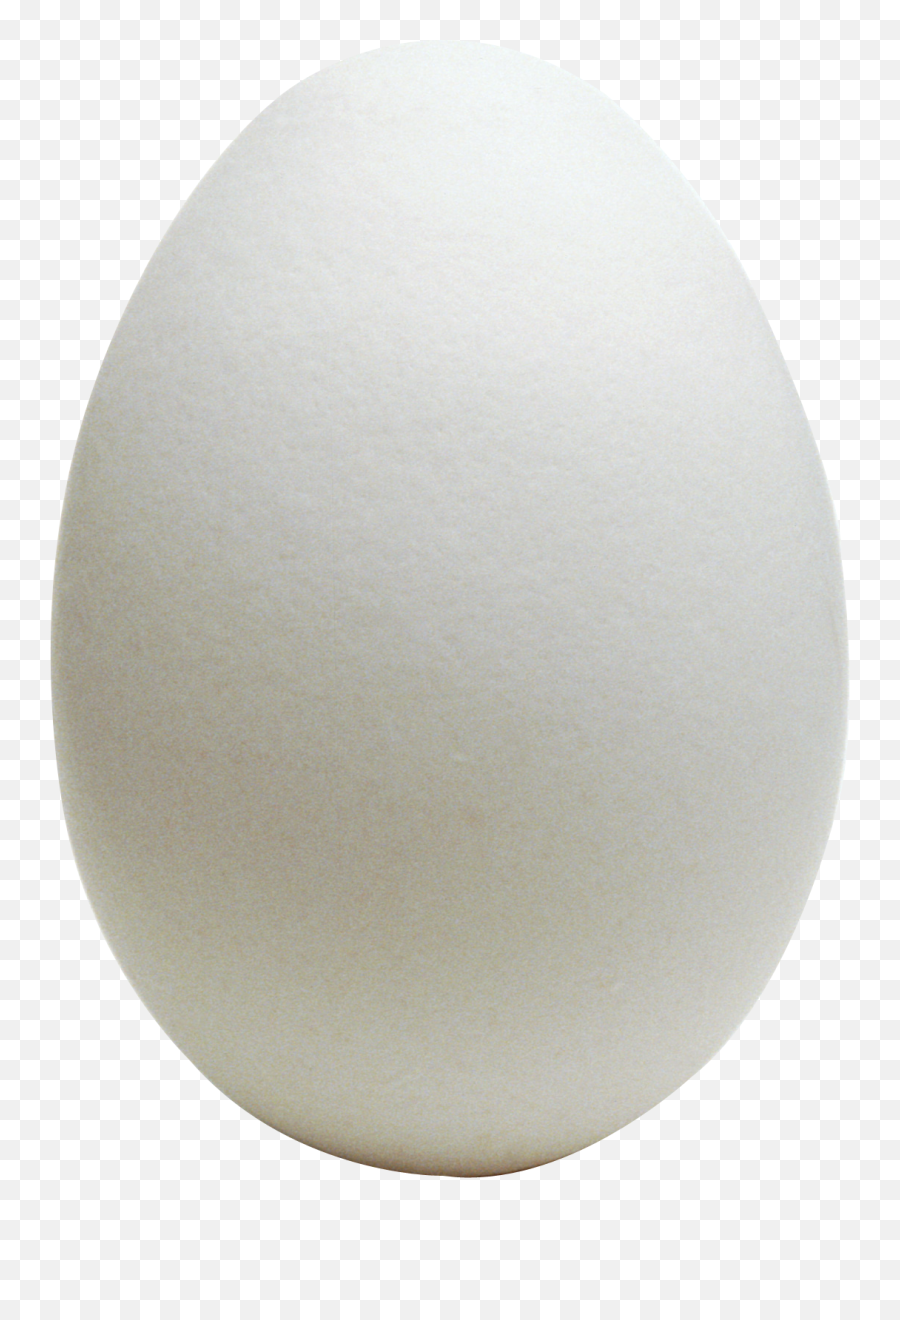 Egg Png Free Download 7 Images - Transparent Egg Png,Egg Png